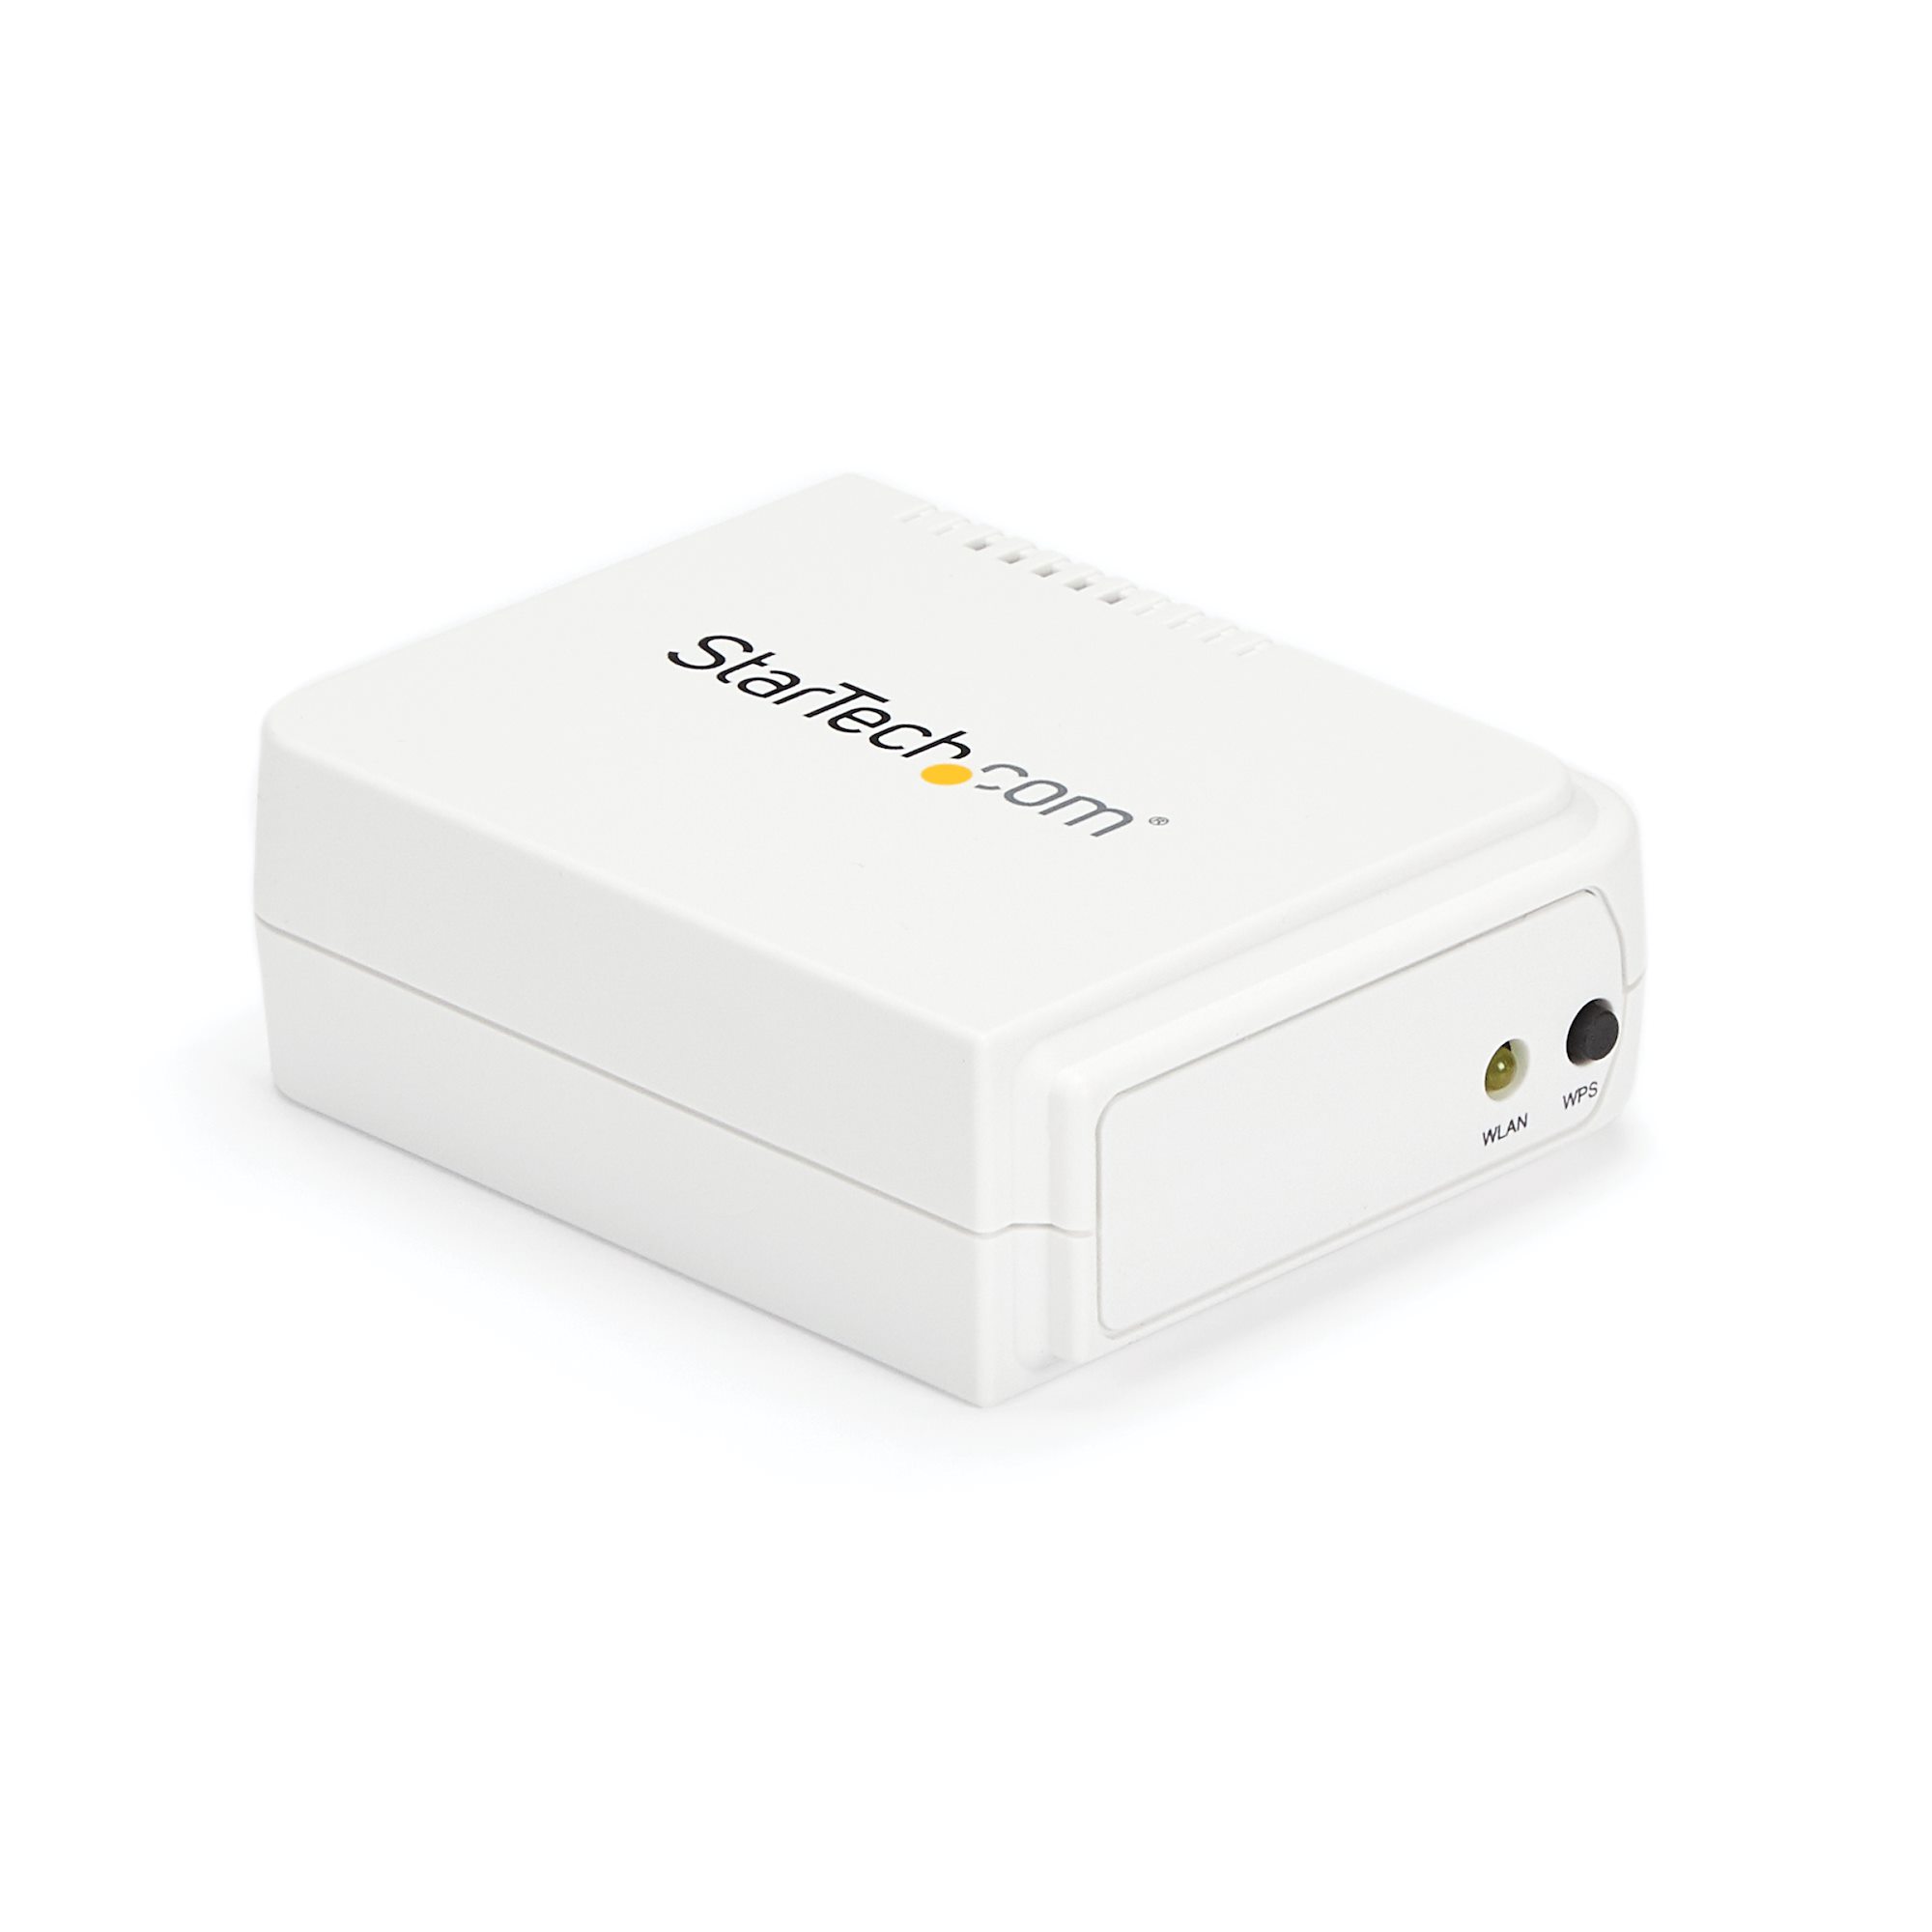 WAITLOVER Mini adaptateur de serveur d'impression WiFi sans fil pour  imprimante USB, port USB 2.0 rapide 10/100 Mbps RJ-45 LAN Port Ethernet  Imprimer